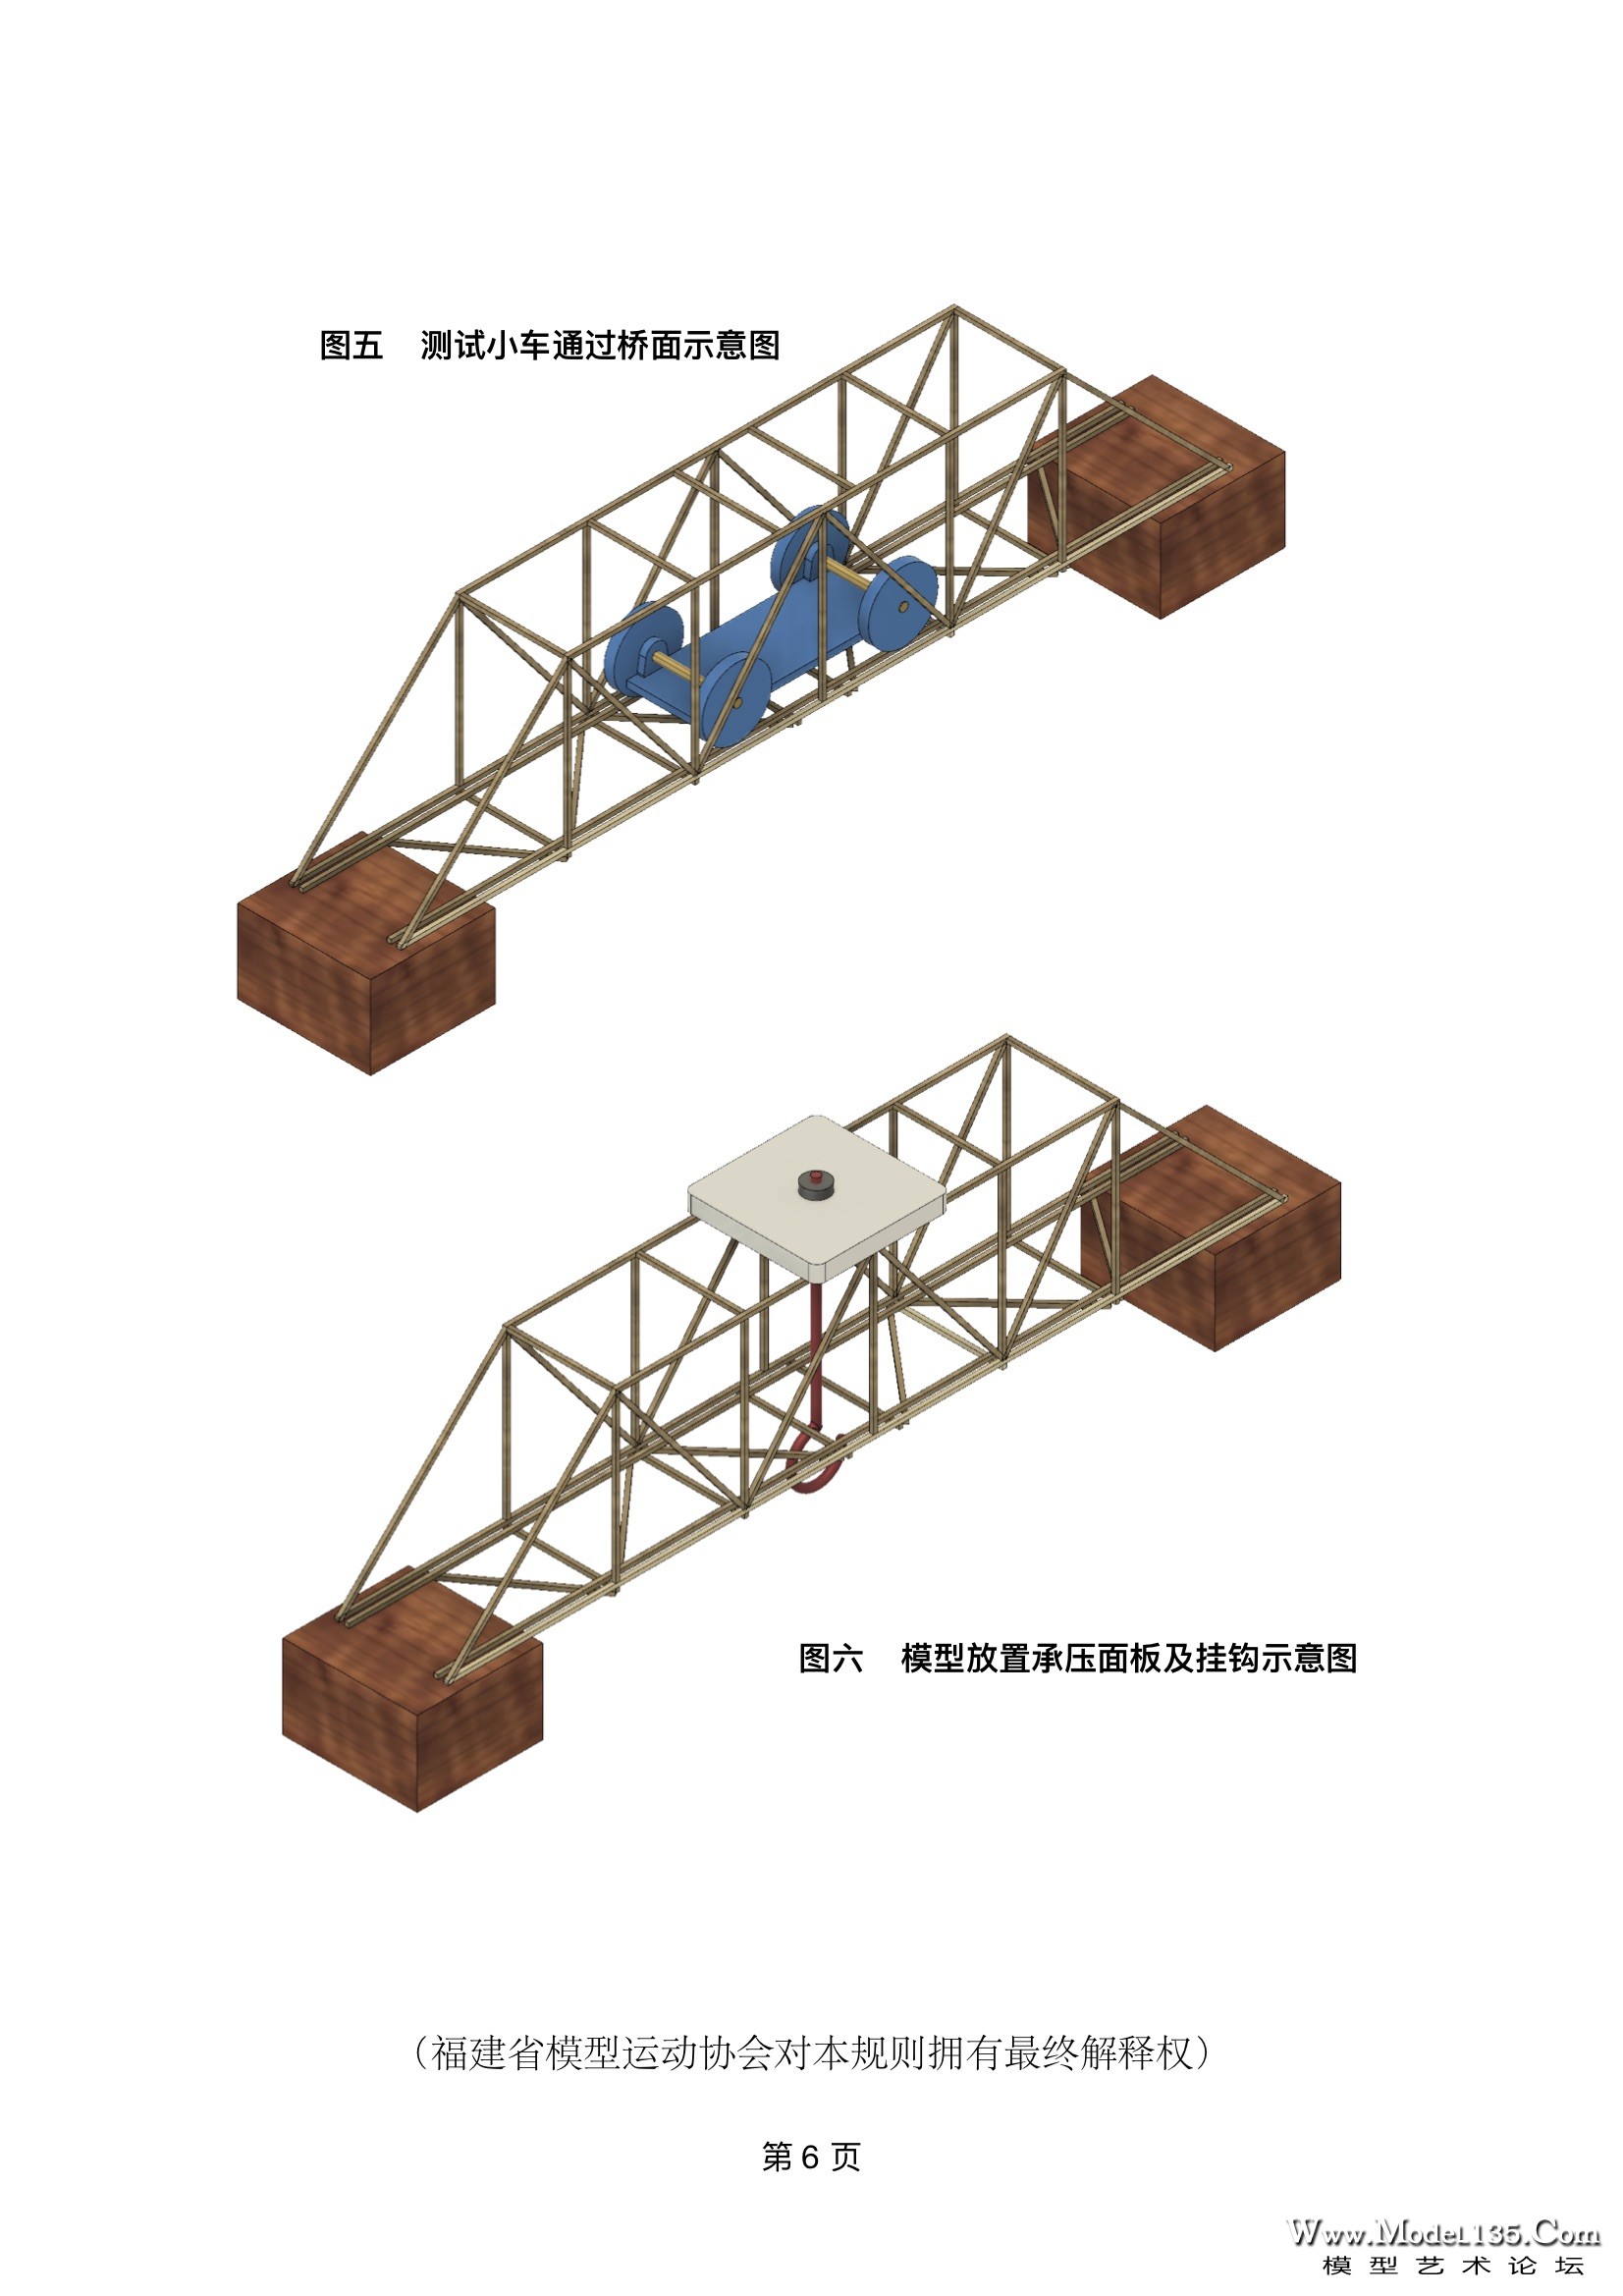 6-2019年福建省建筑模型锦标赛规则.jpg